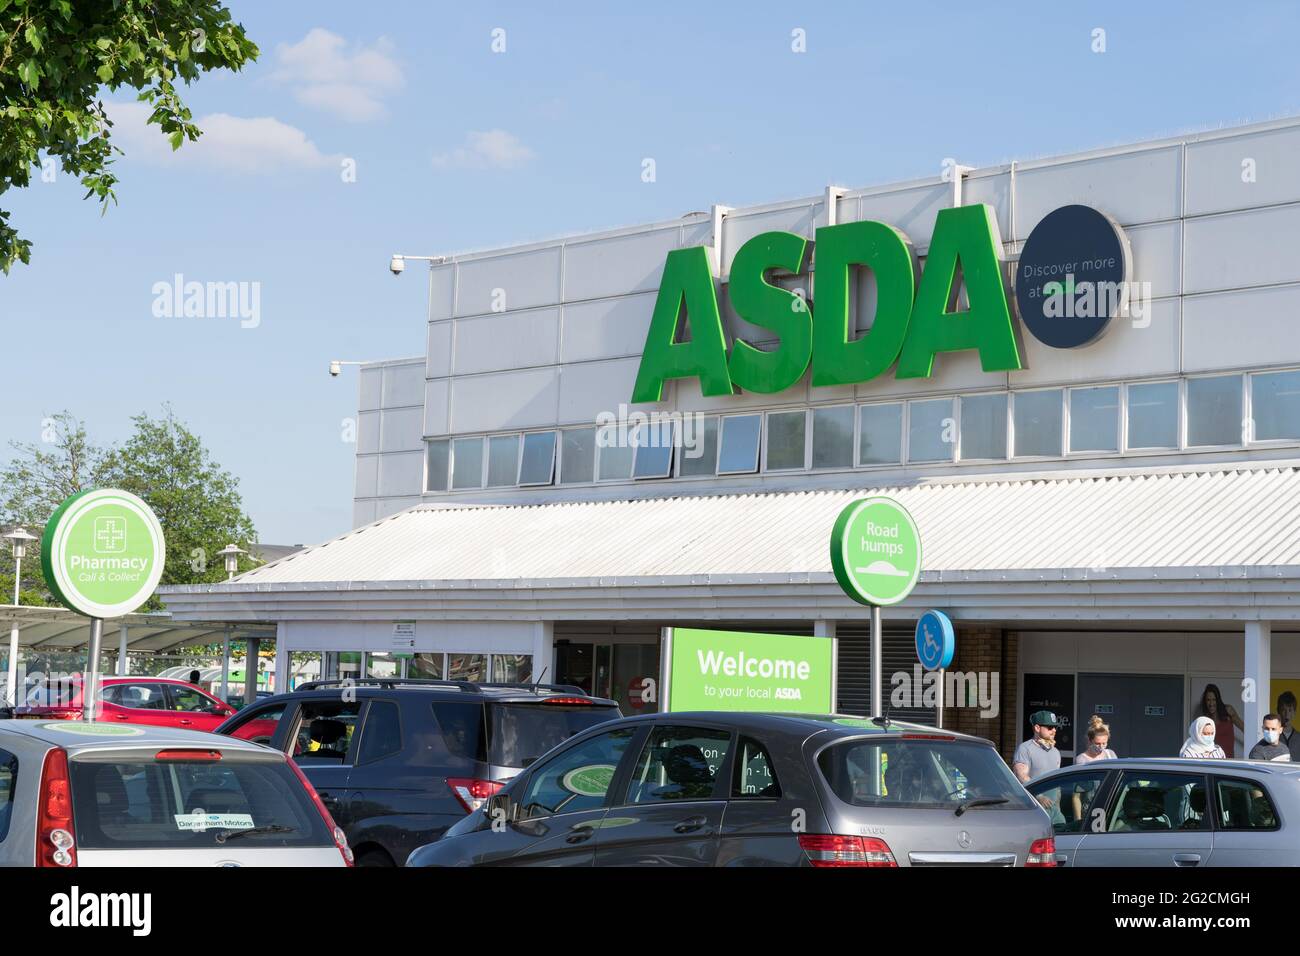 AVANT du magasin ASDA, logo, Bienvenue à ASDA, parking, entrée au magasin, Londres, Angleterre, Grande-bretagne, magasin anglais, Royaume-Uni Banque D'Images